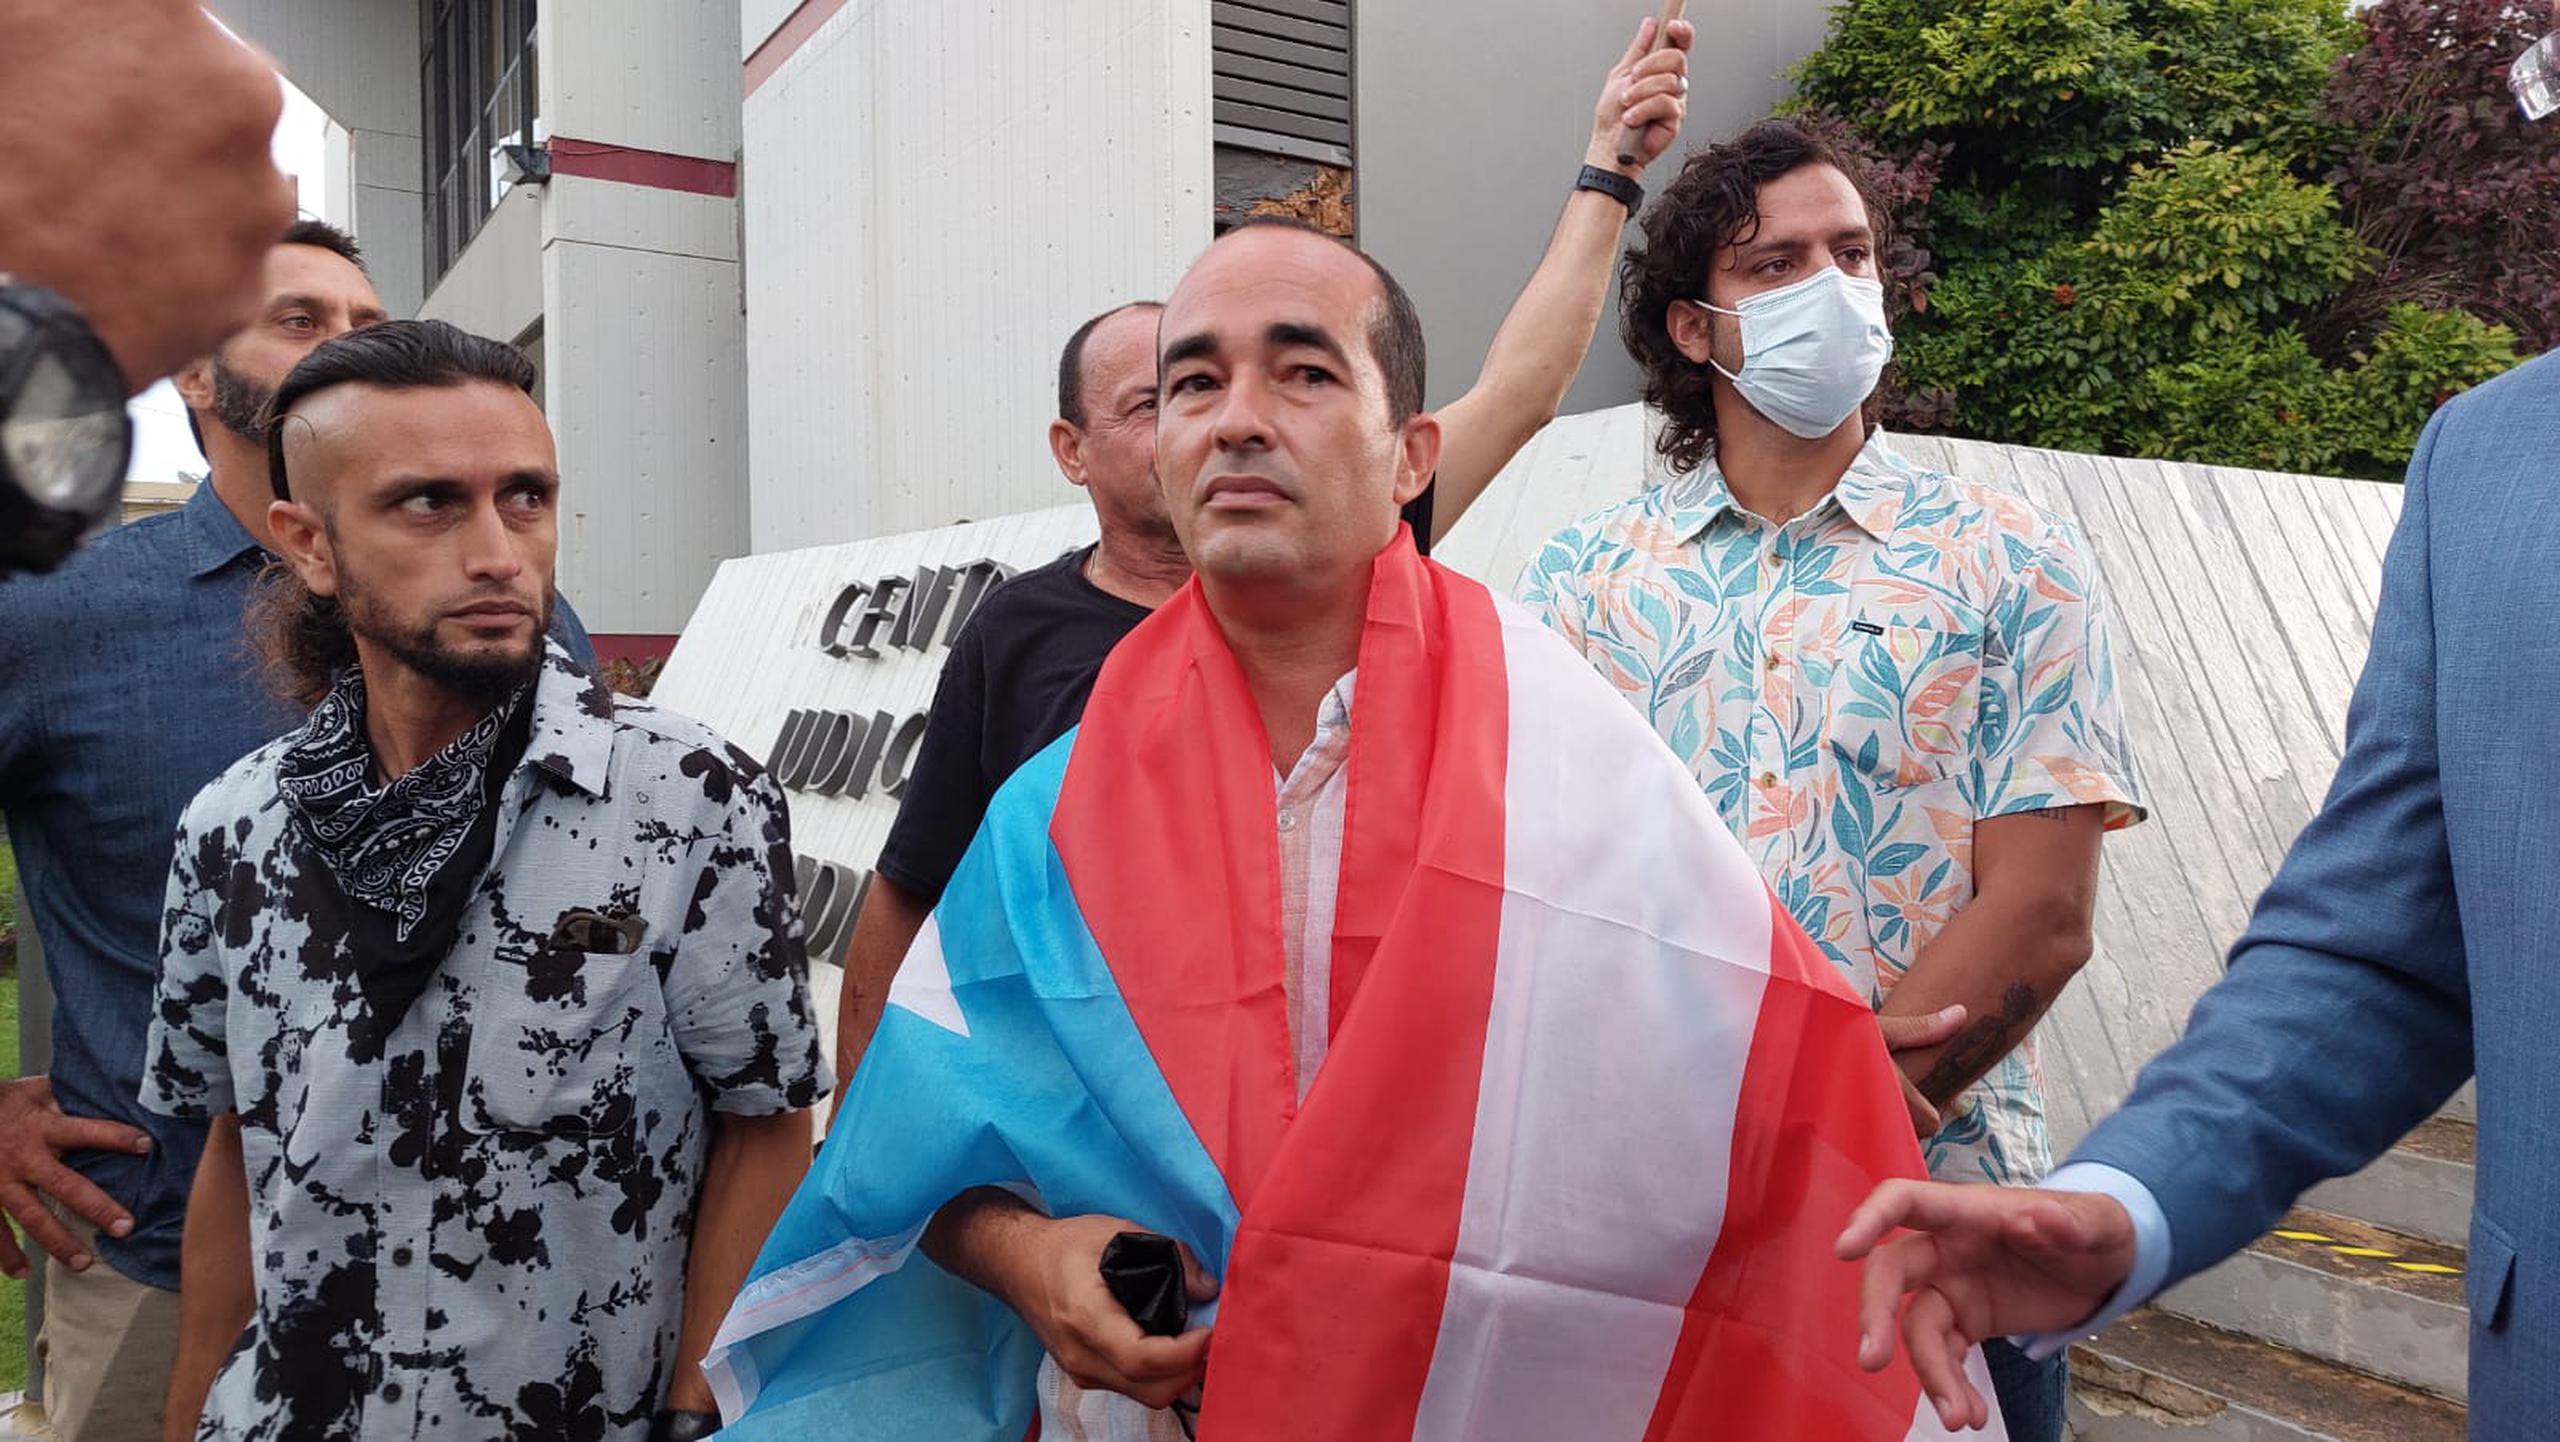 En el medio, envuelto en una bandera de Puerto Rico, Eliezer Molina.